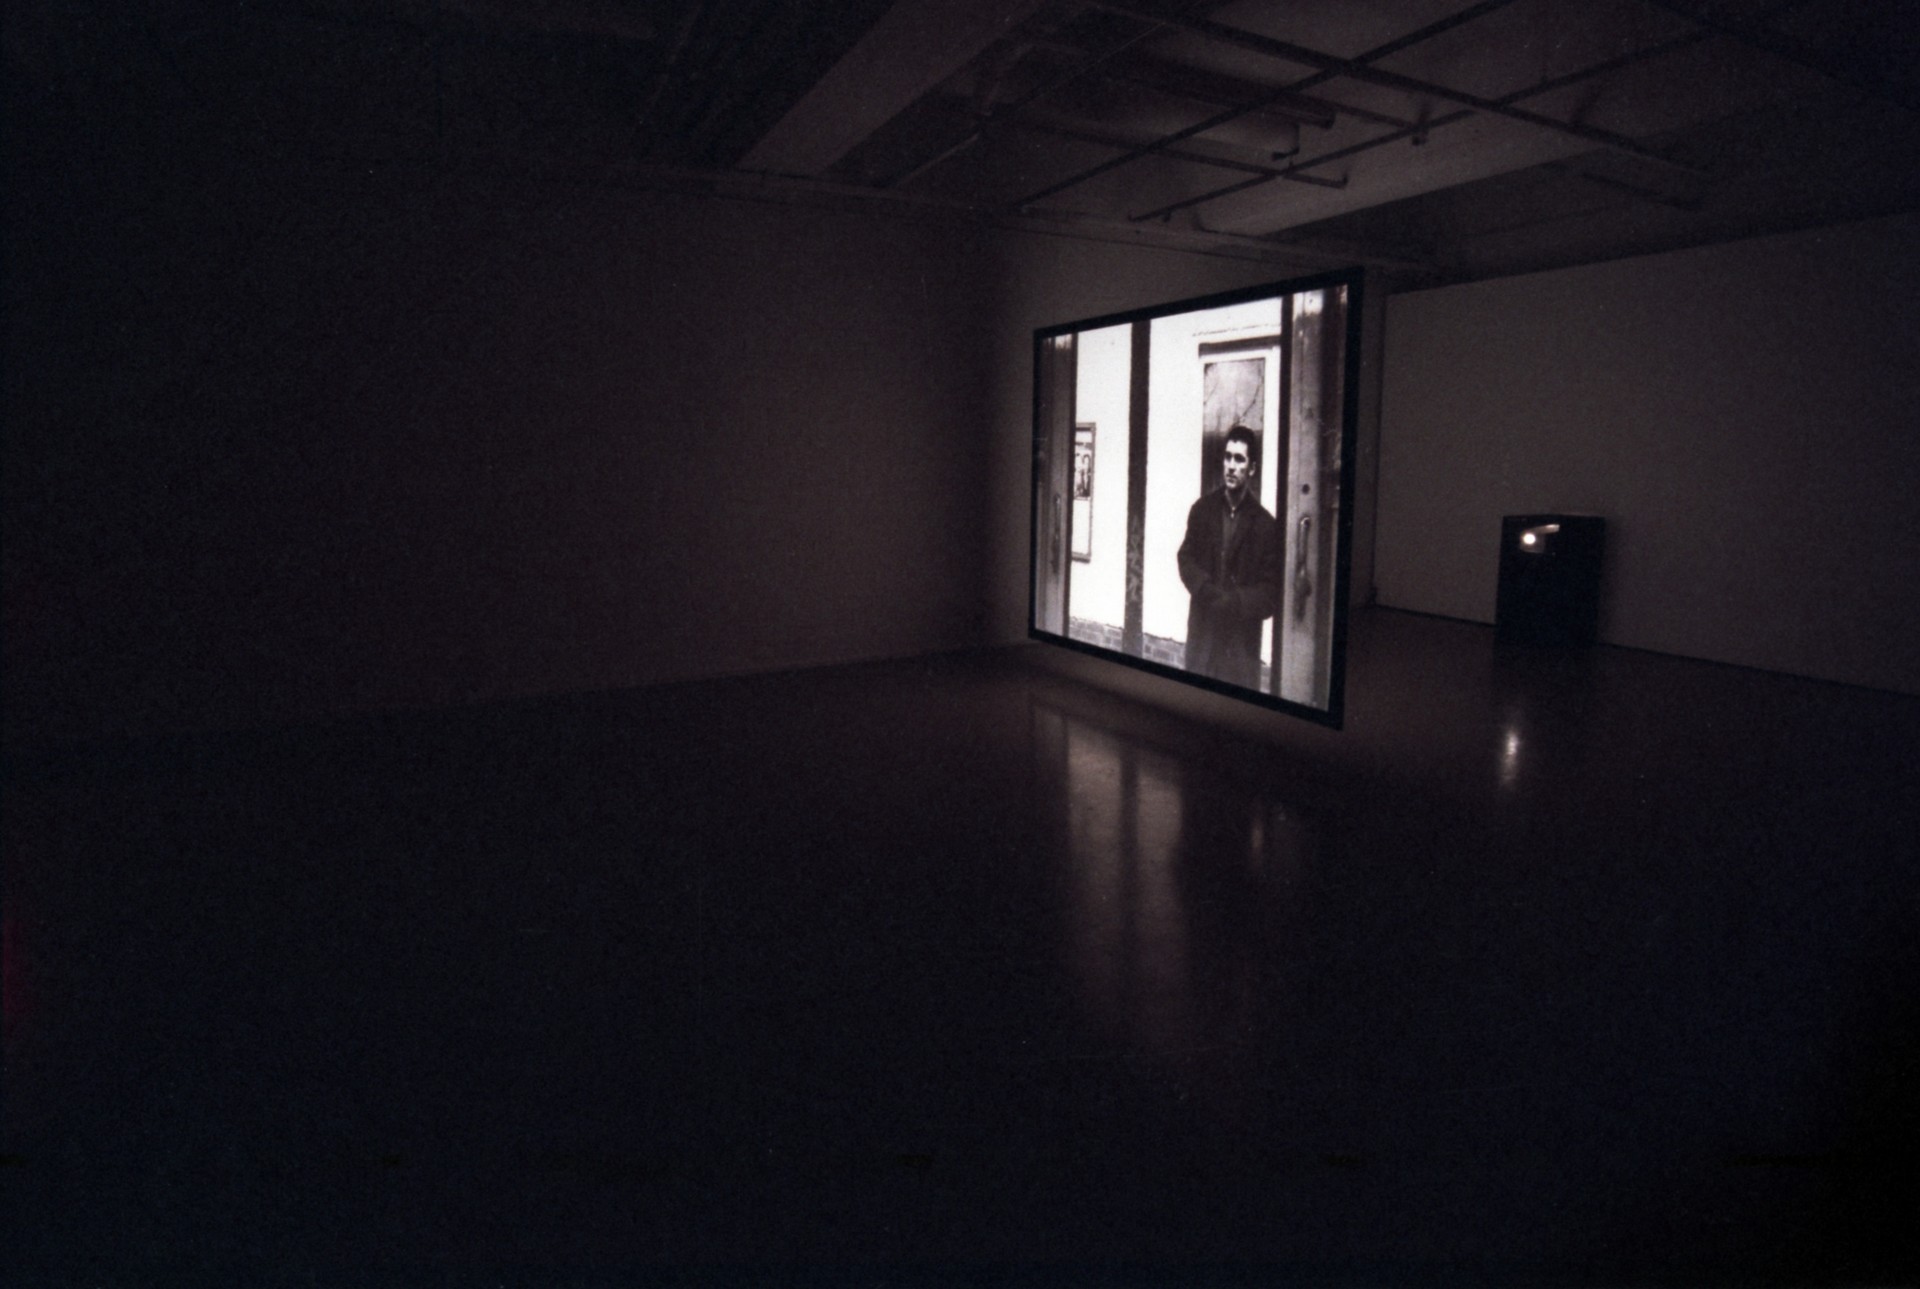 1999 Gallery Otso ”Pallas exhibition”. Espoo, Finland